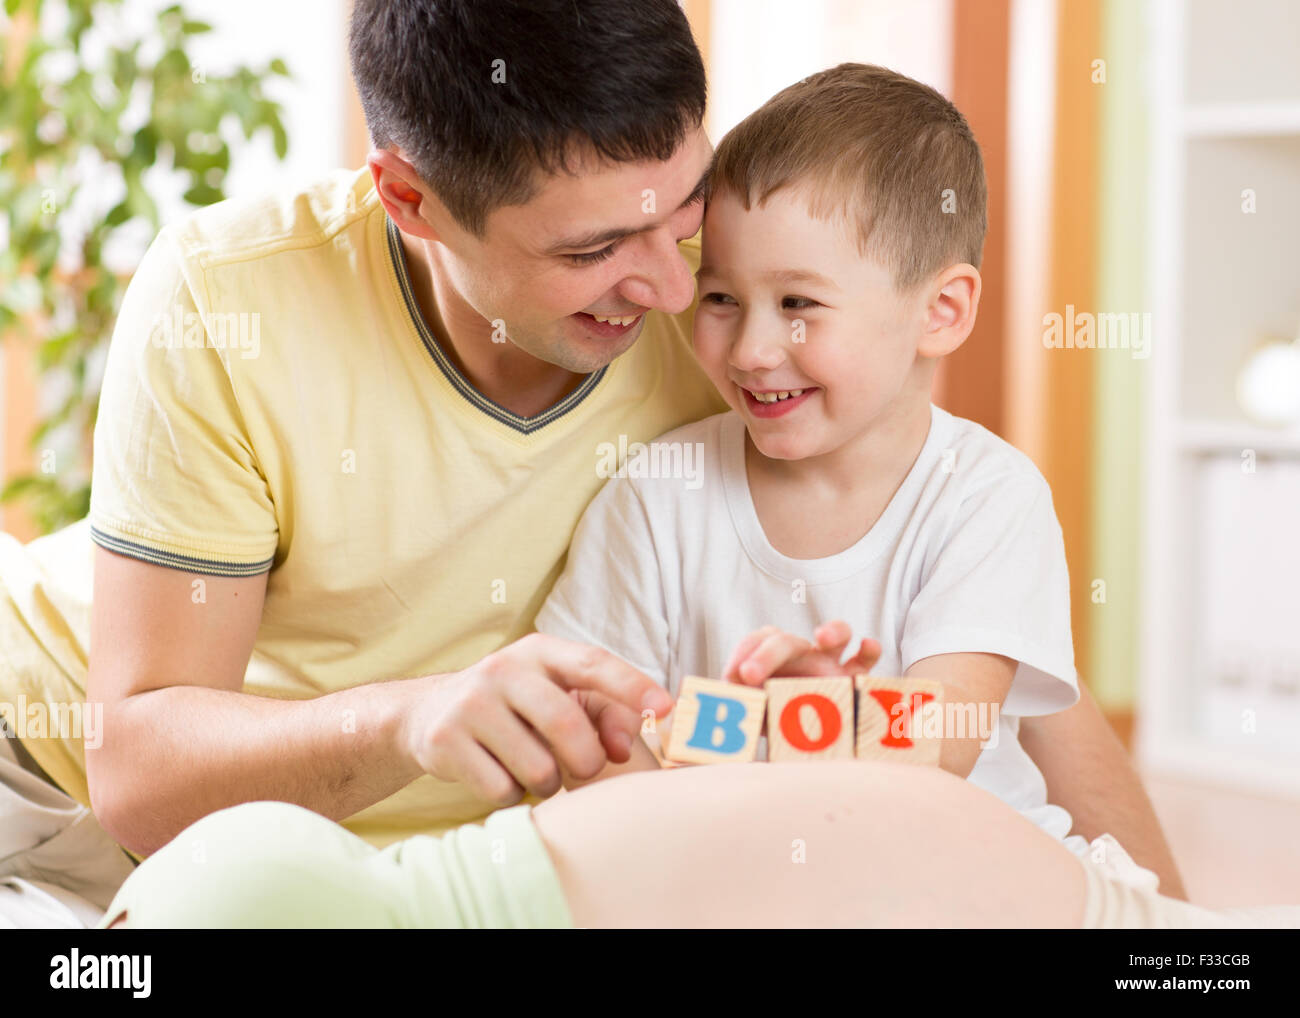 Glückliches Kind junge und sein Vater spielen mit Spielzeug auf Bauch der schwangeren Mutter Stockfoto